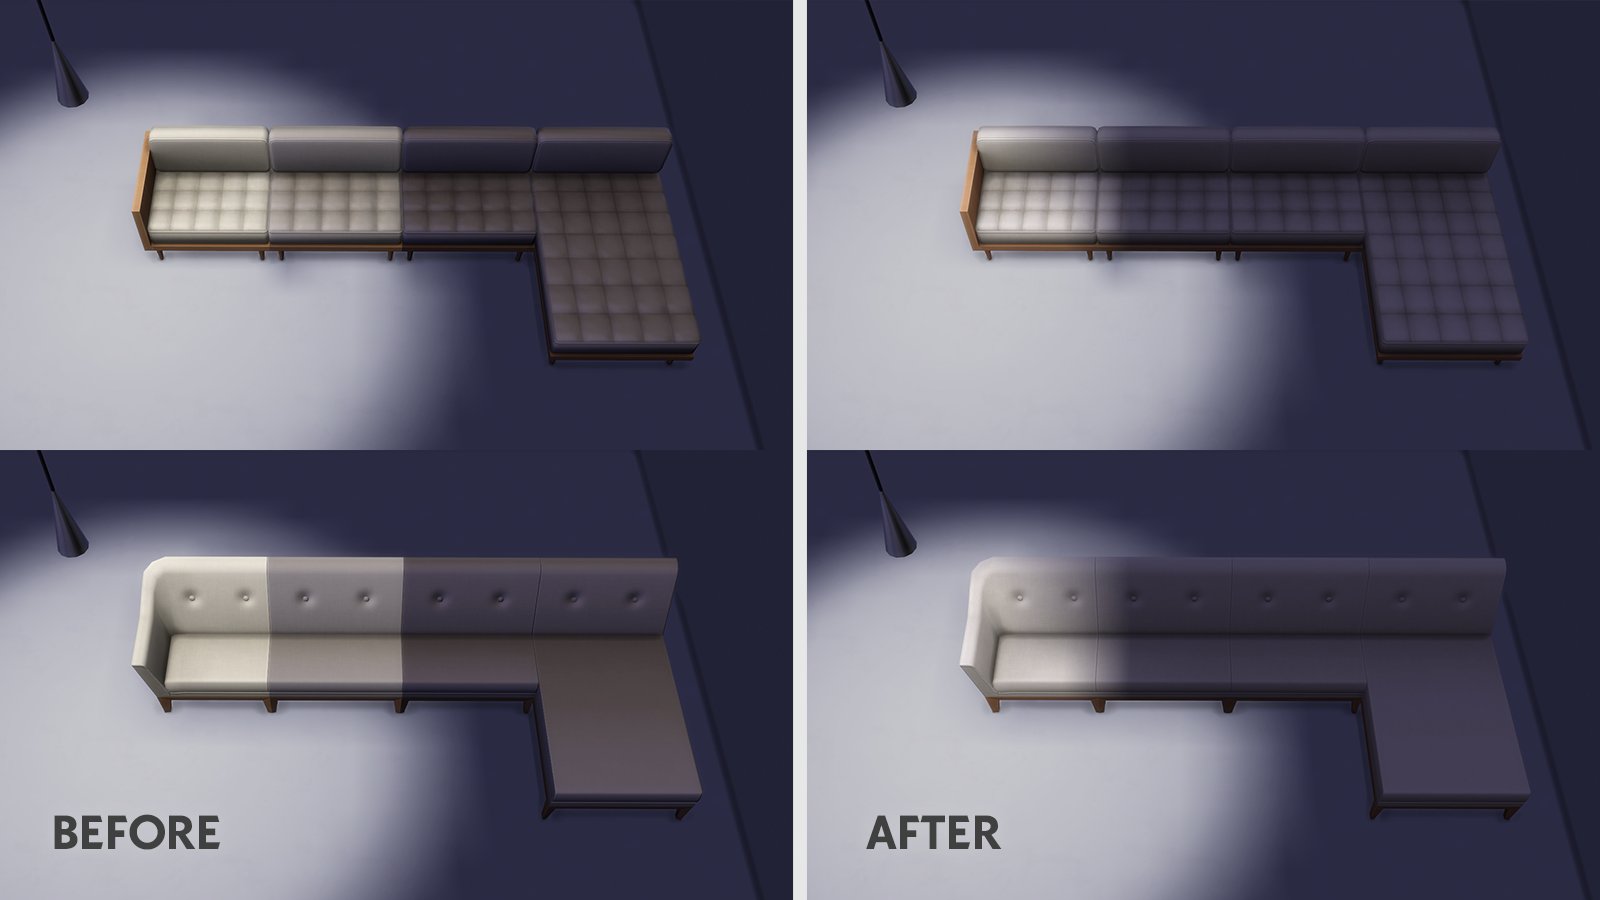 The Sims 4: Mod de Sofás Modulares Corrige Bug de Sombras que Não Deveria Existir